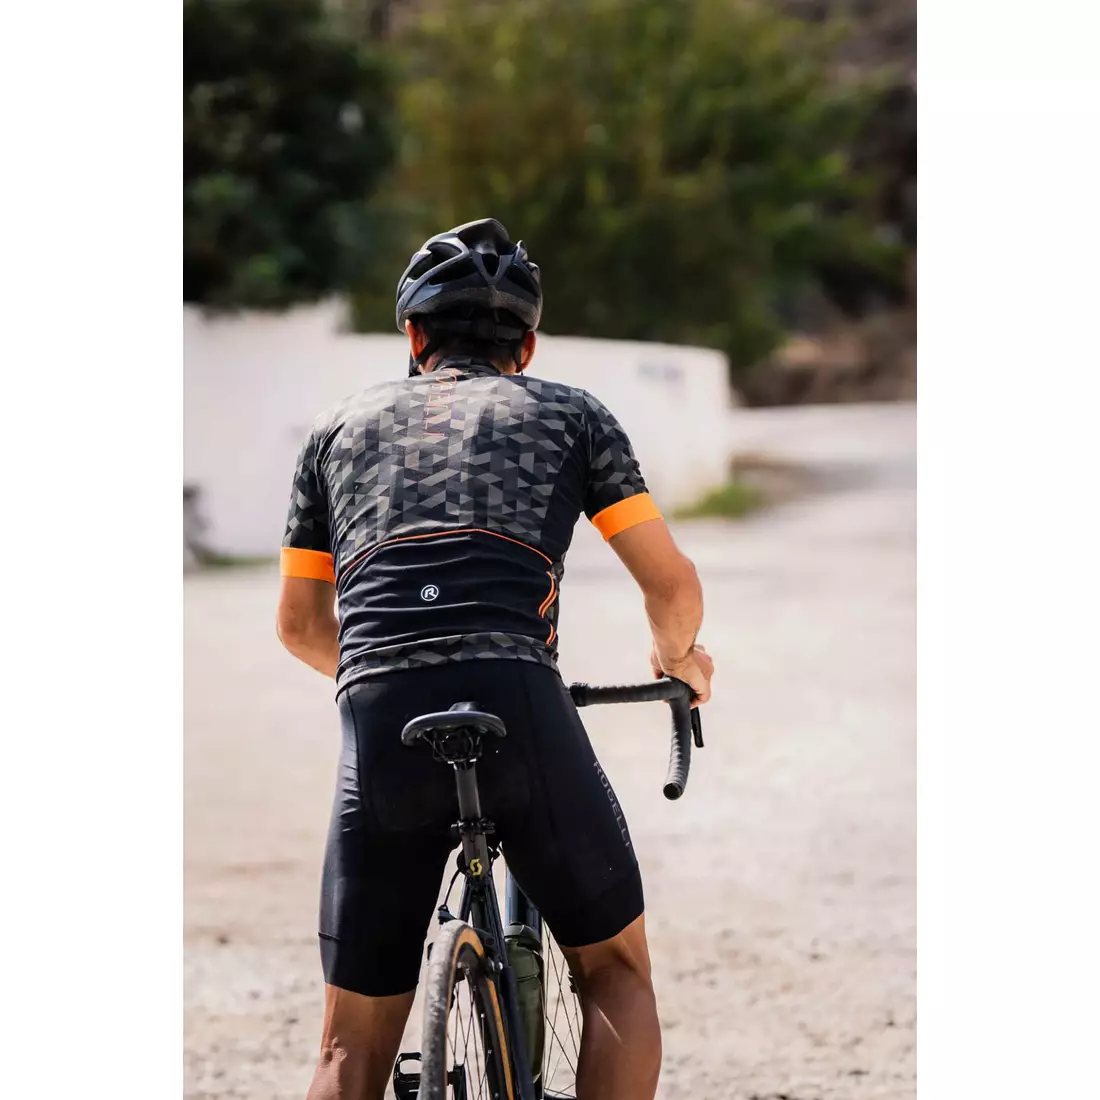 Rogelli RUBIK pánský cyklistický dres, khaki-oranžová